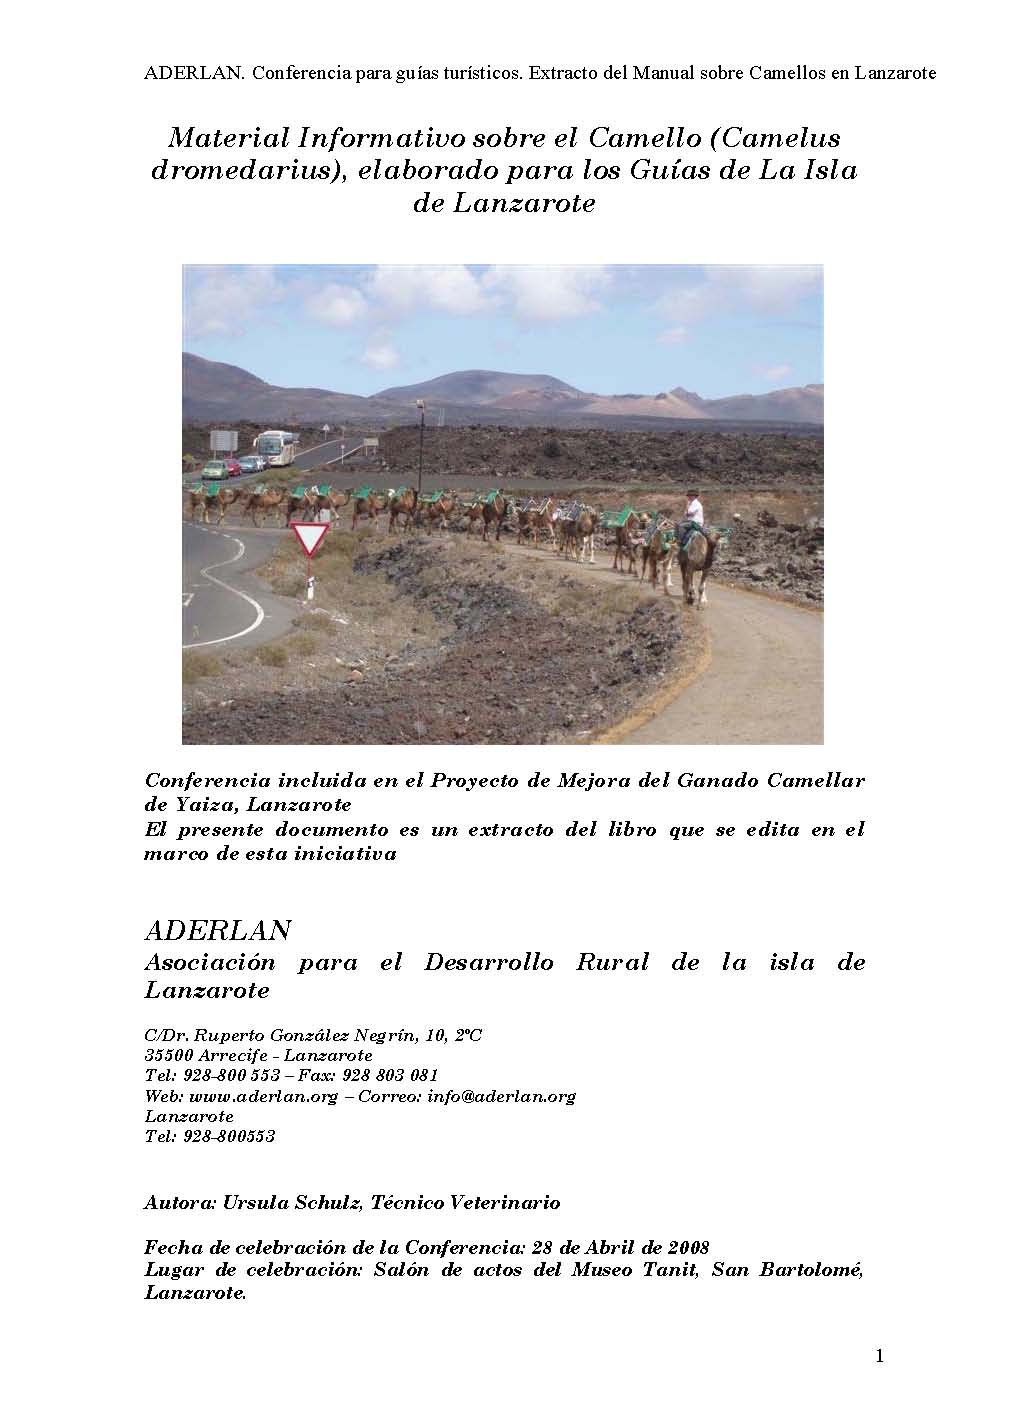 Material informativo sobre el camello (camelus dromedarius), elaborado para los guías de la isla de Lanzarote